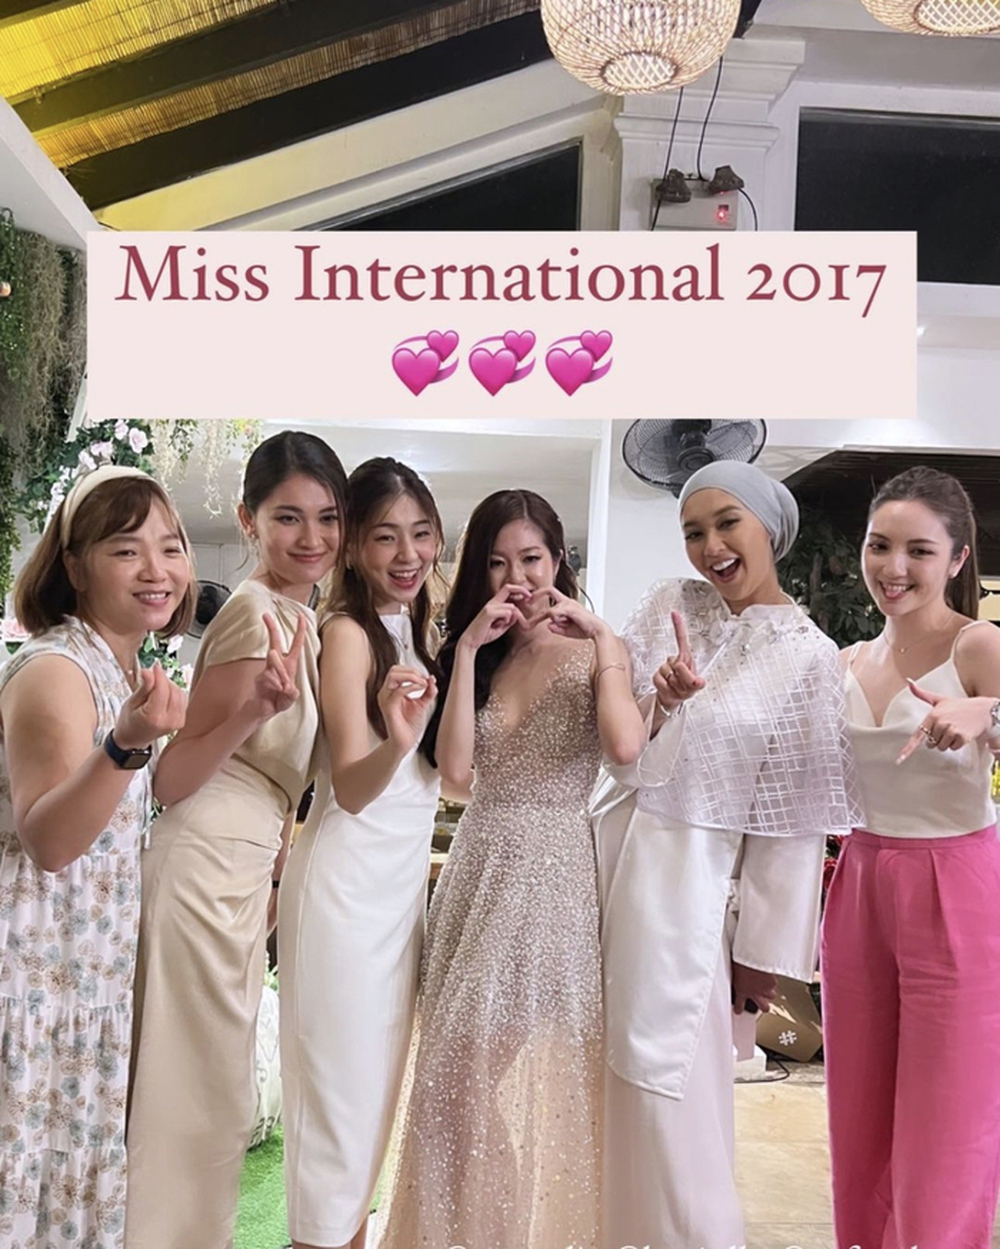 Á hậu Thùy Dung cùng chồng dự đám cưới đối thủ ở Hoa hậu Quốc tế 2017 - Ảnh 2.